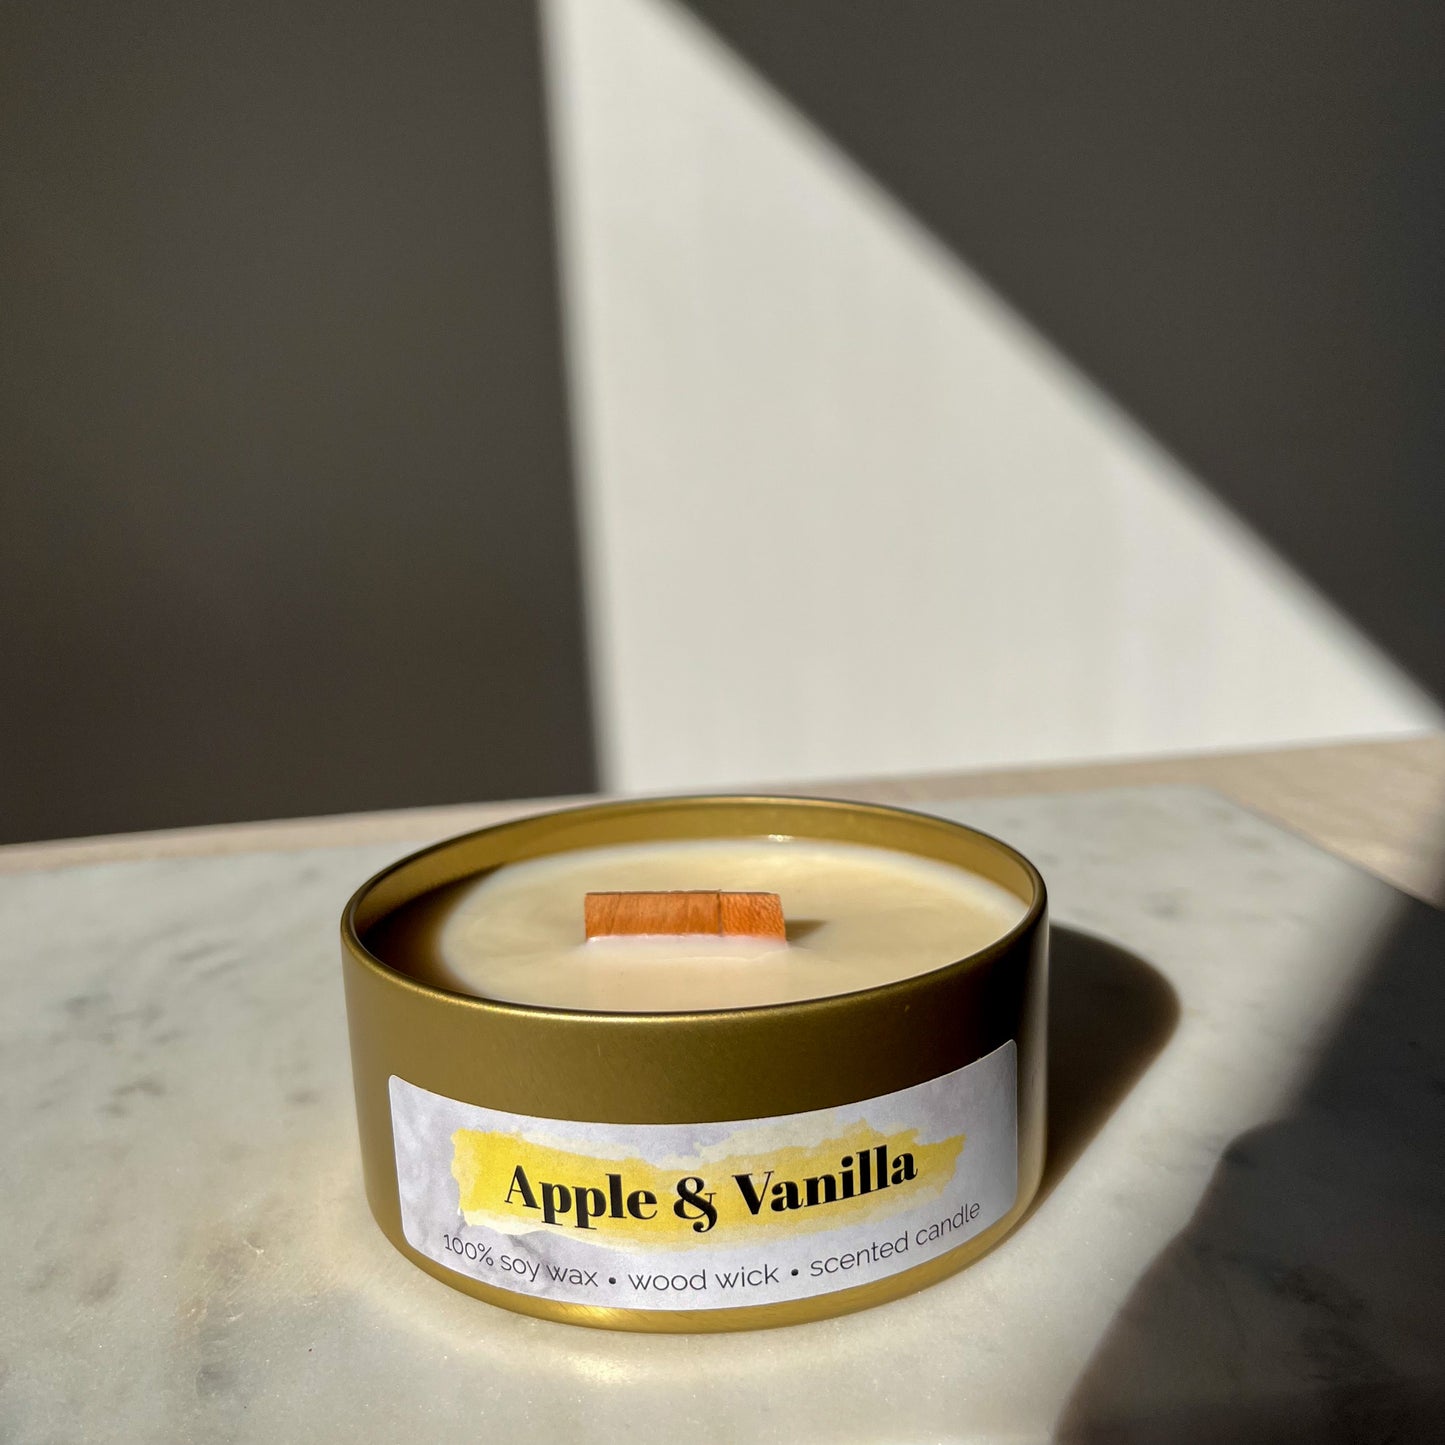 Apple & Vanilla